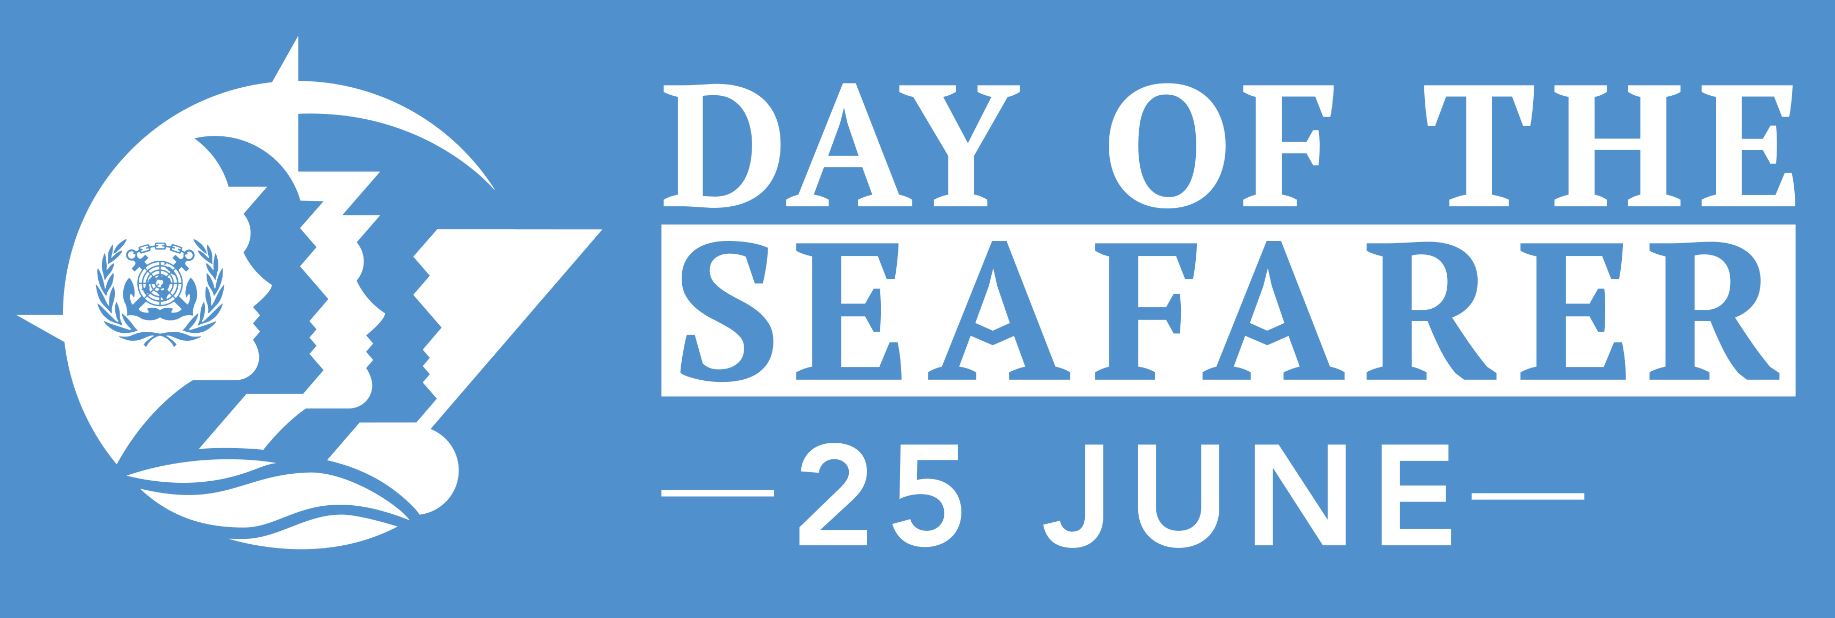 ادای احترام به دریانوردان در روز جهانی دریانورد